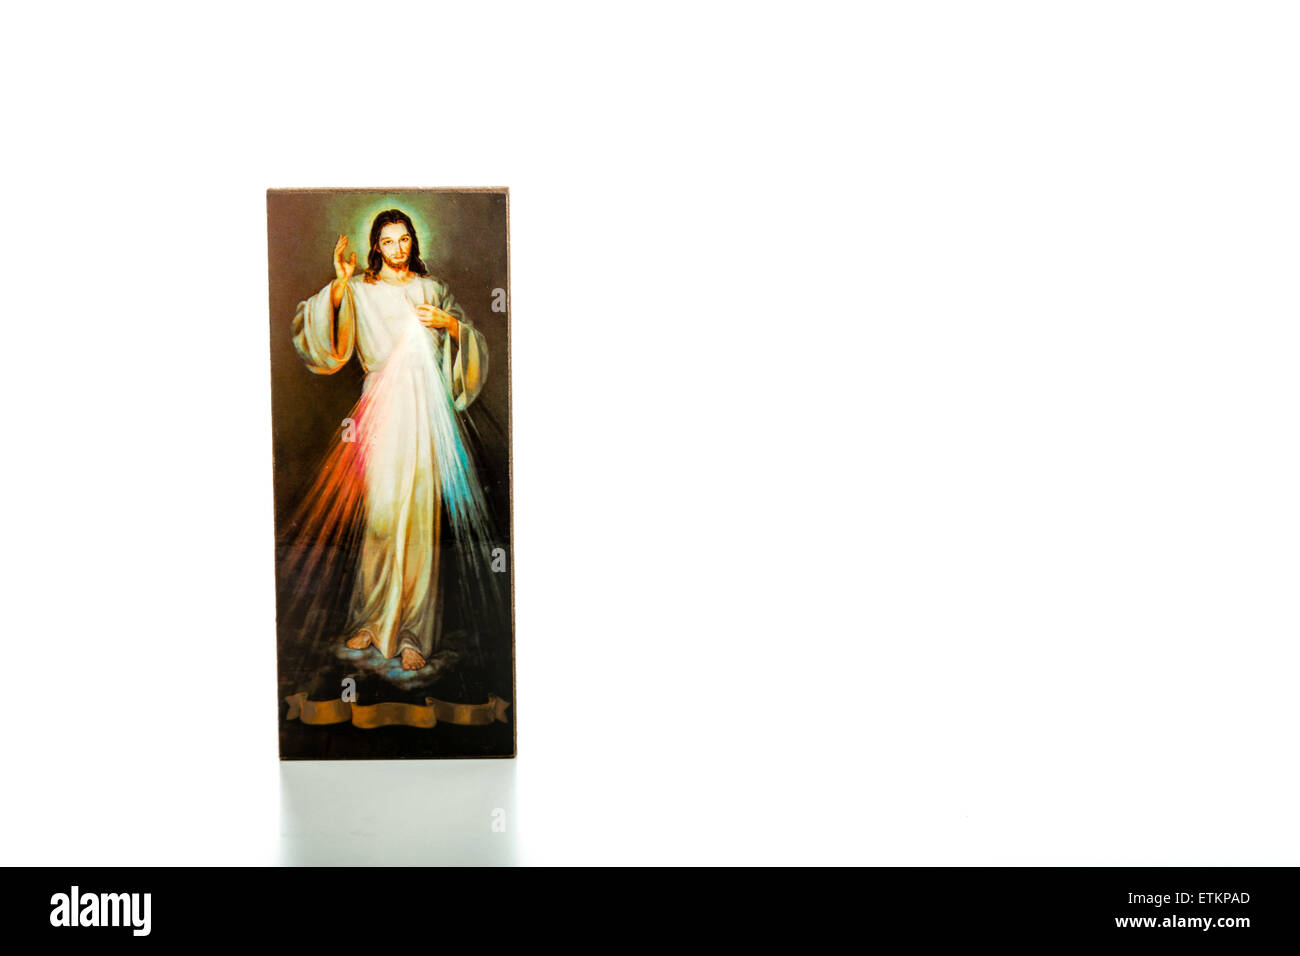 Isolé sur fond blanc, une image de Jésus Miséricordieux avec ruban blanc en bas sans écrits Banque D'Images